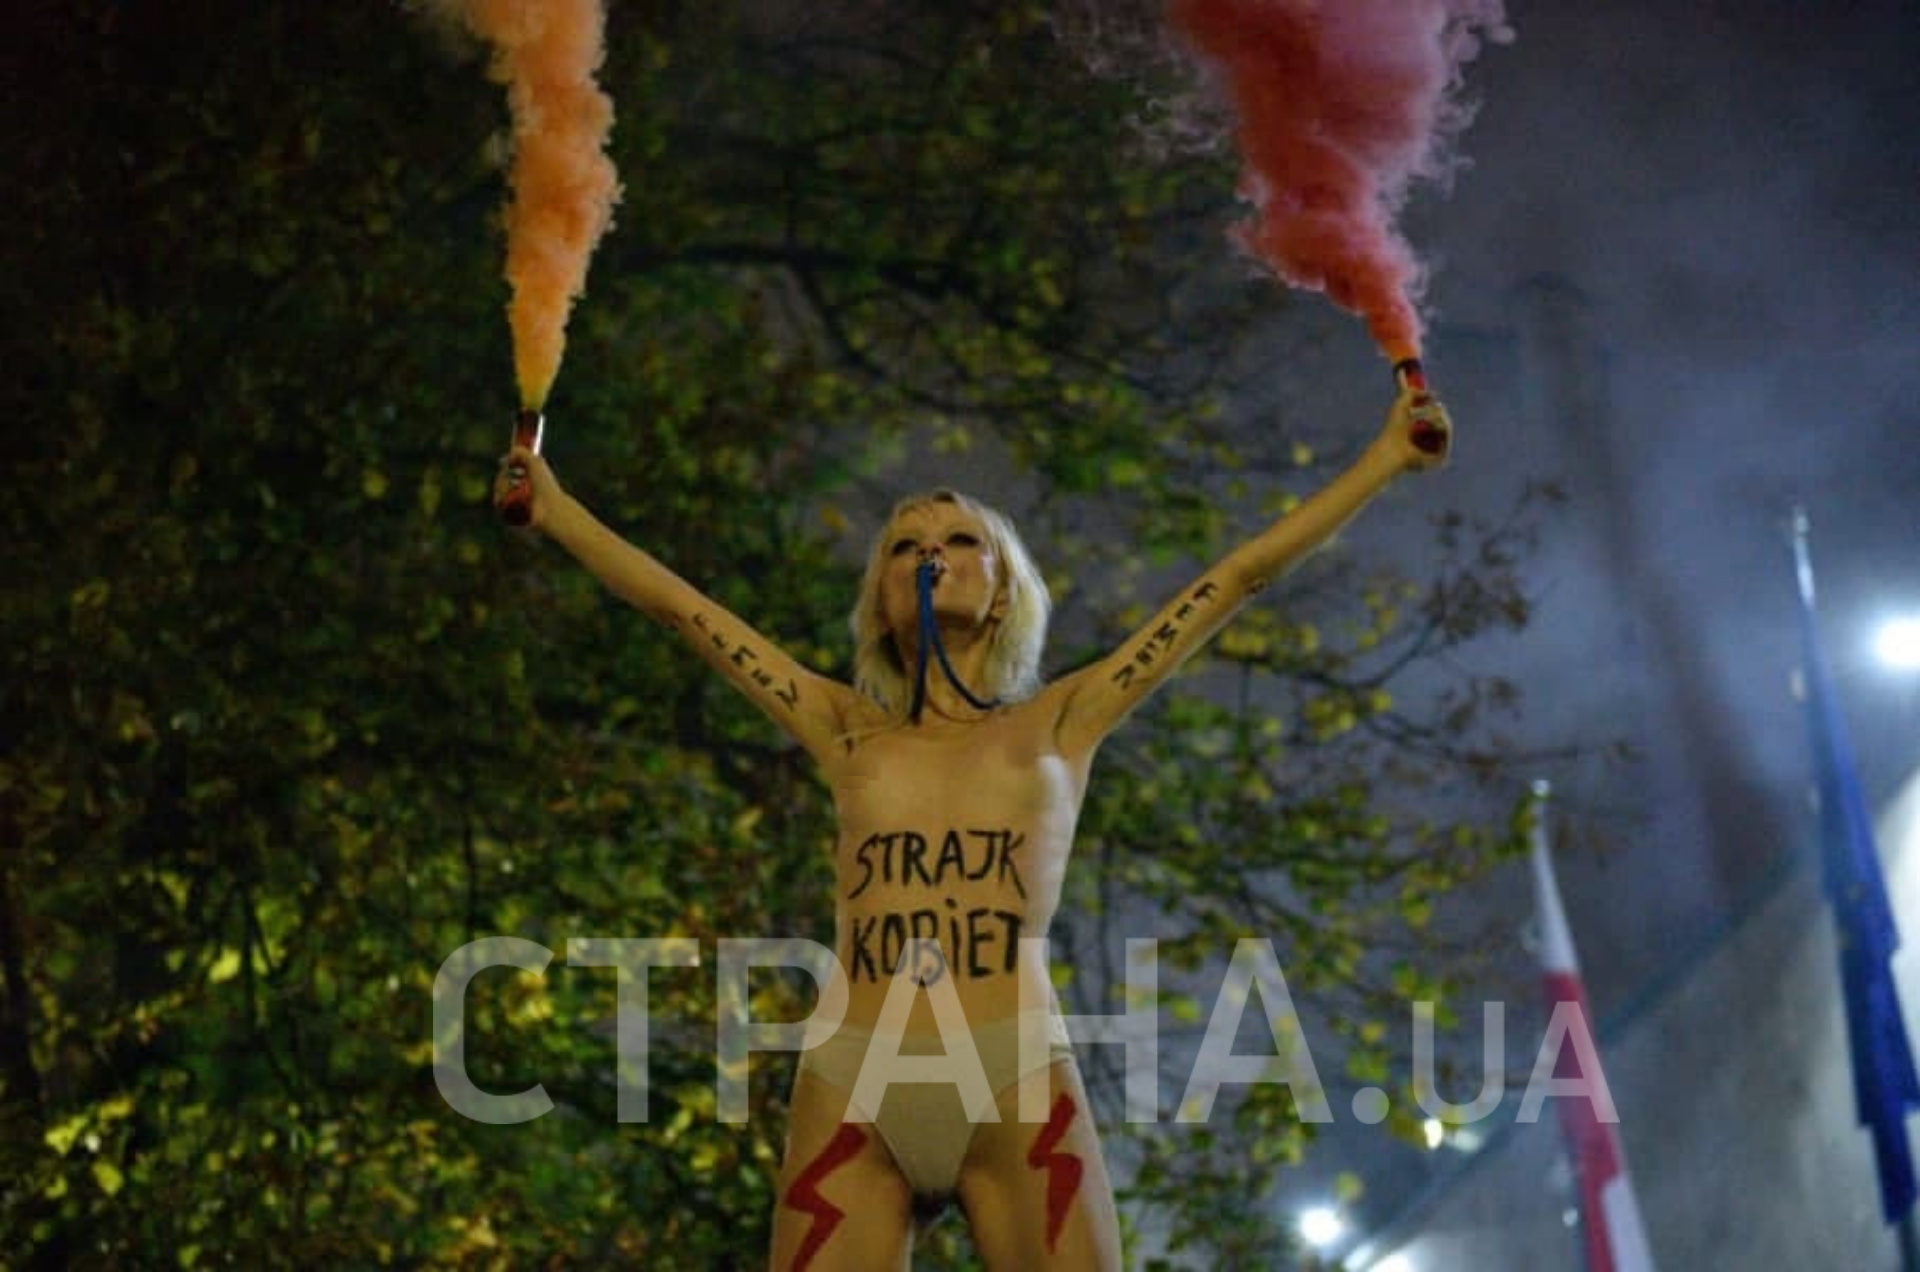  Активистка Femen оголилась в знак протеста против запрета абортов в Польше. Фото: Страна